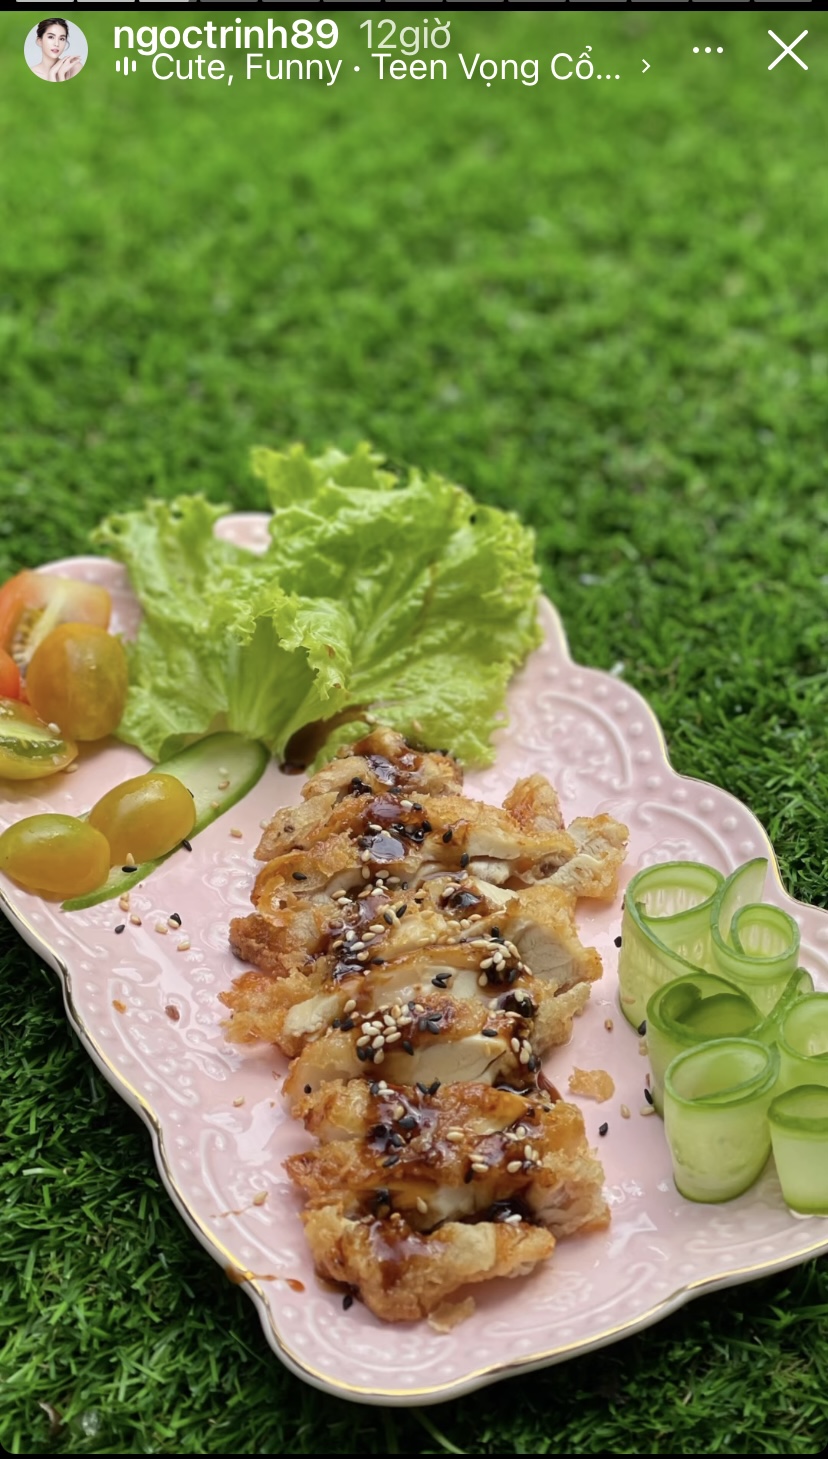 Chỉ với nguyên liệu dễ tìm là gà và một số gia vị như sốt, tương Nhật, đường... Ngọc Trinh đã có ngay một đĩa gà chiên kiểu Nhật cho bữa ăn ngày thứ 24 của hành trình 'giảm cân giữ dáng'.